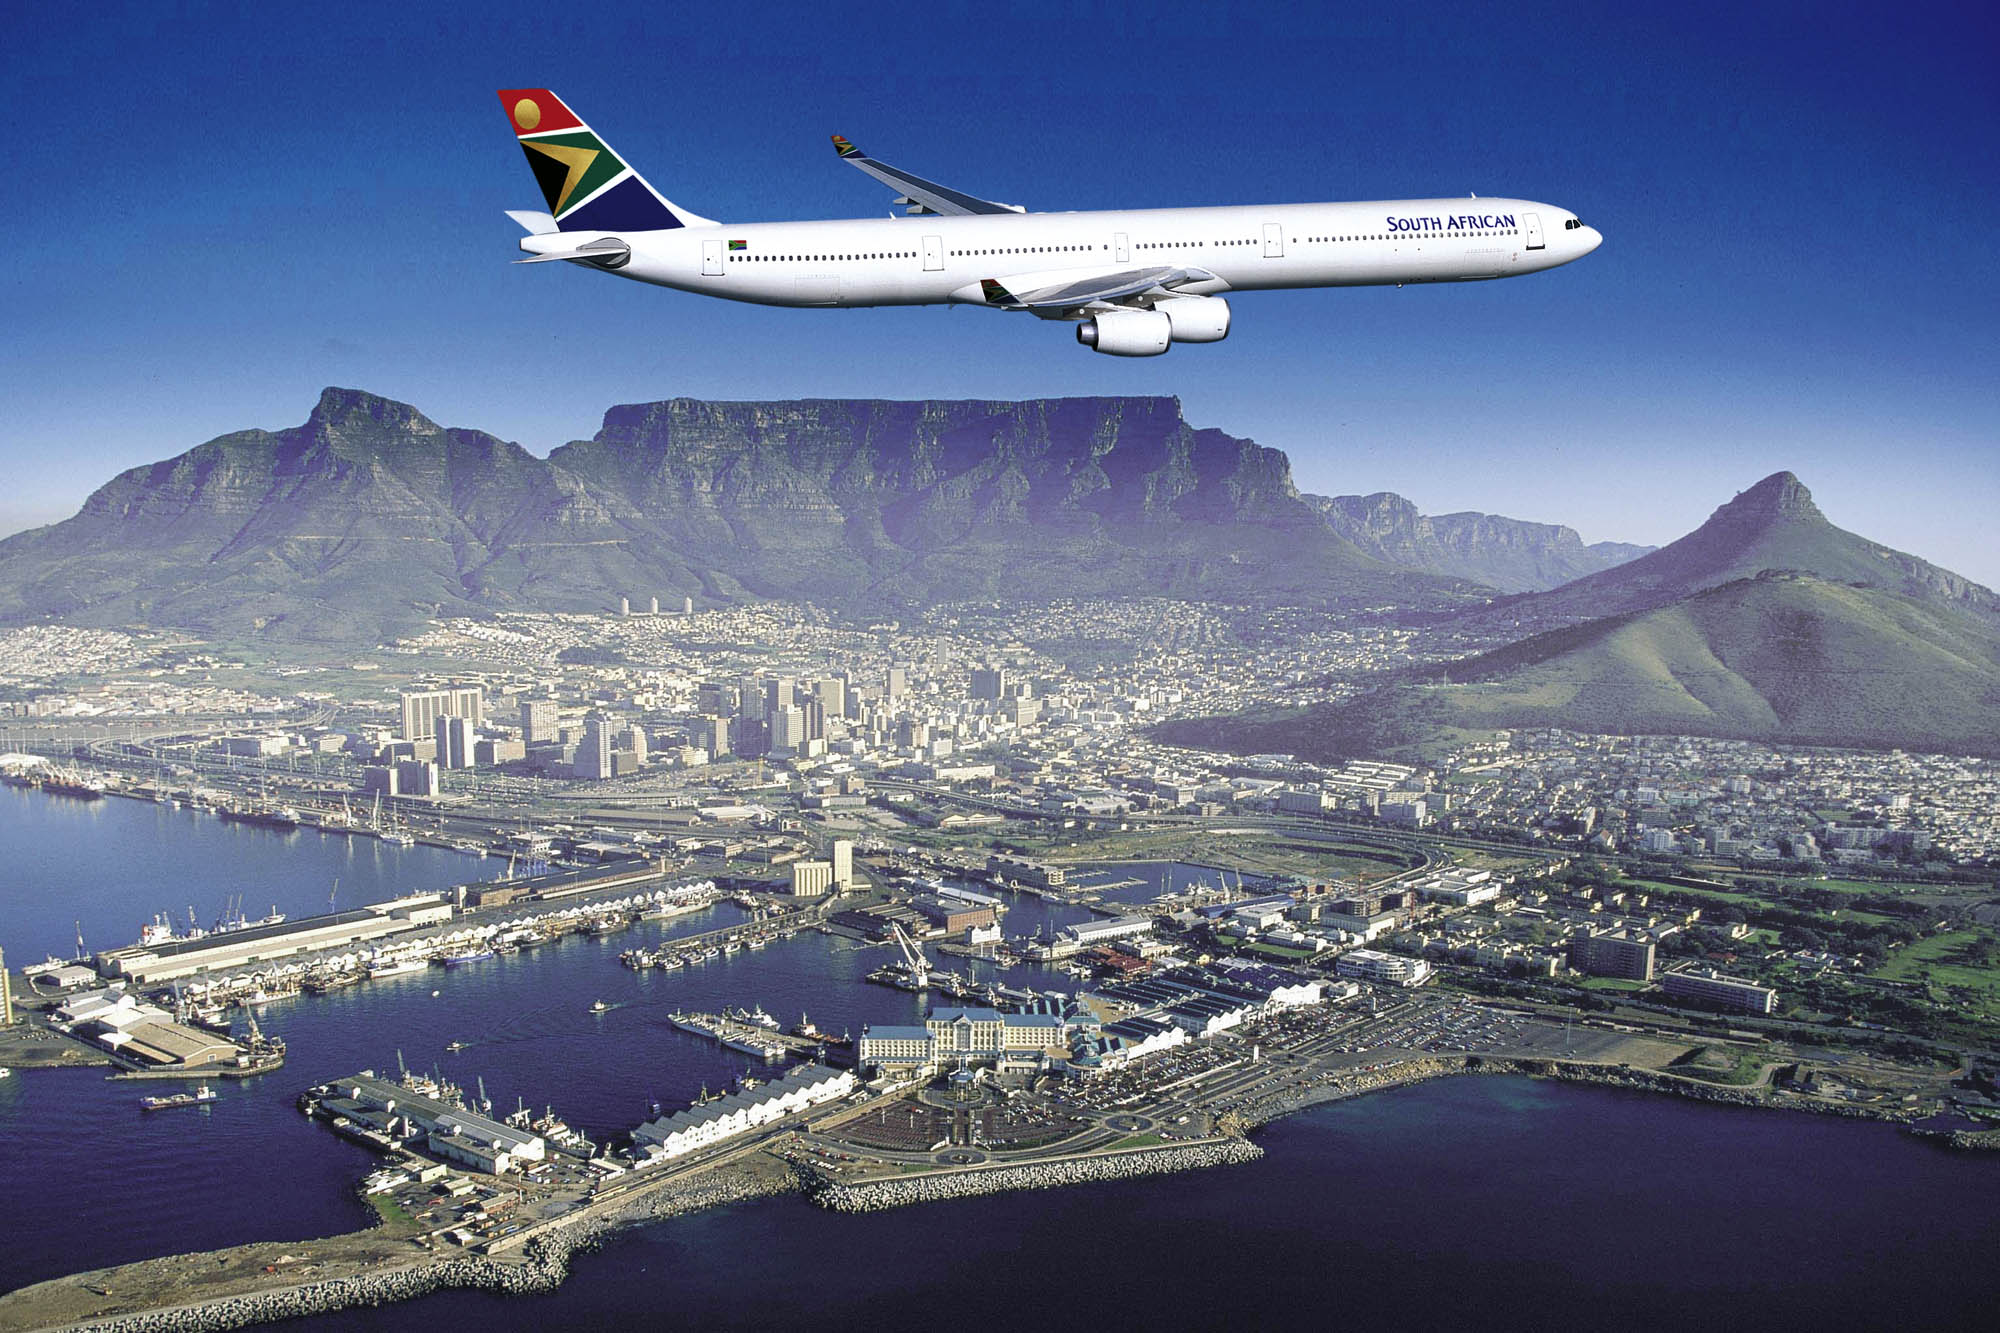 Resultado de imagen para South African Airways